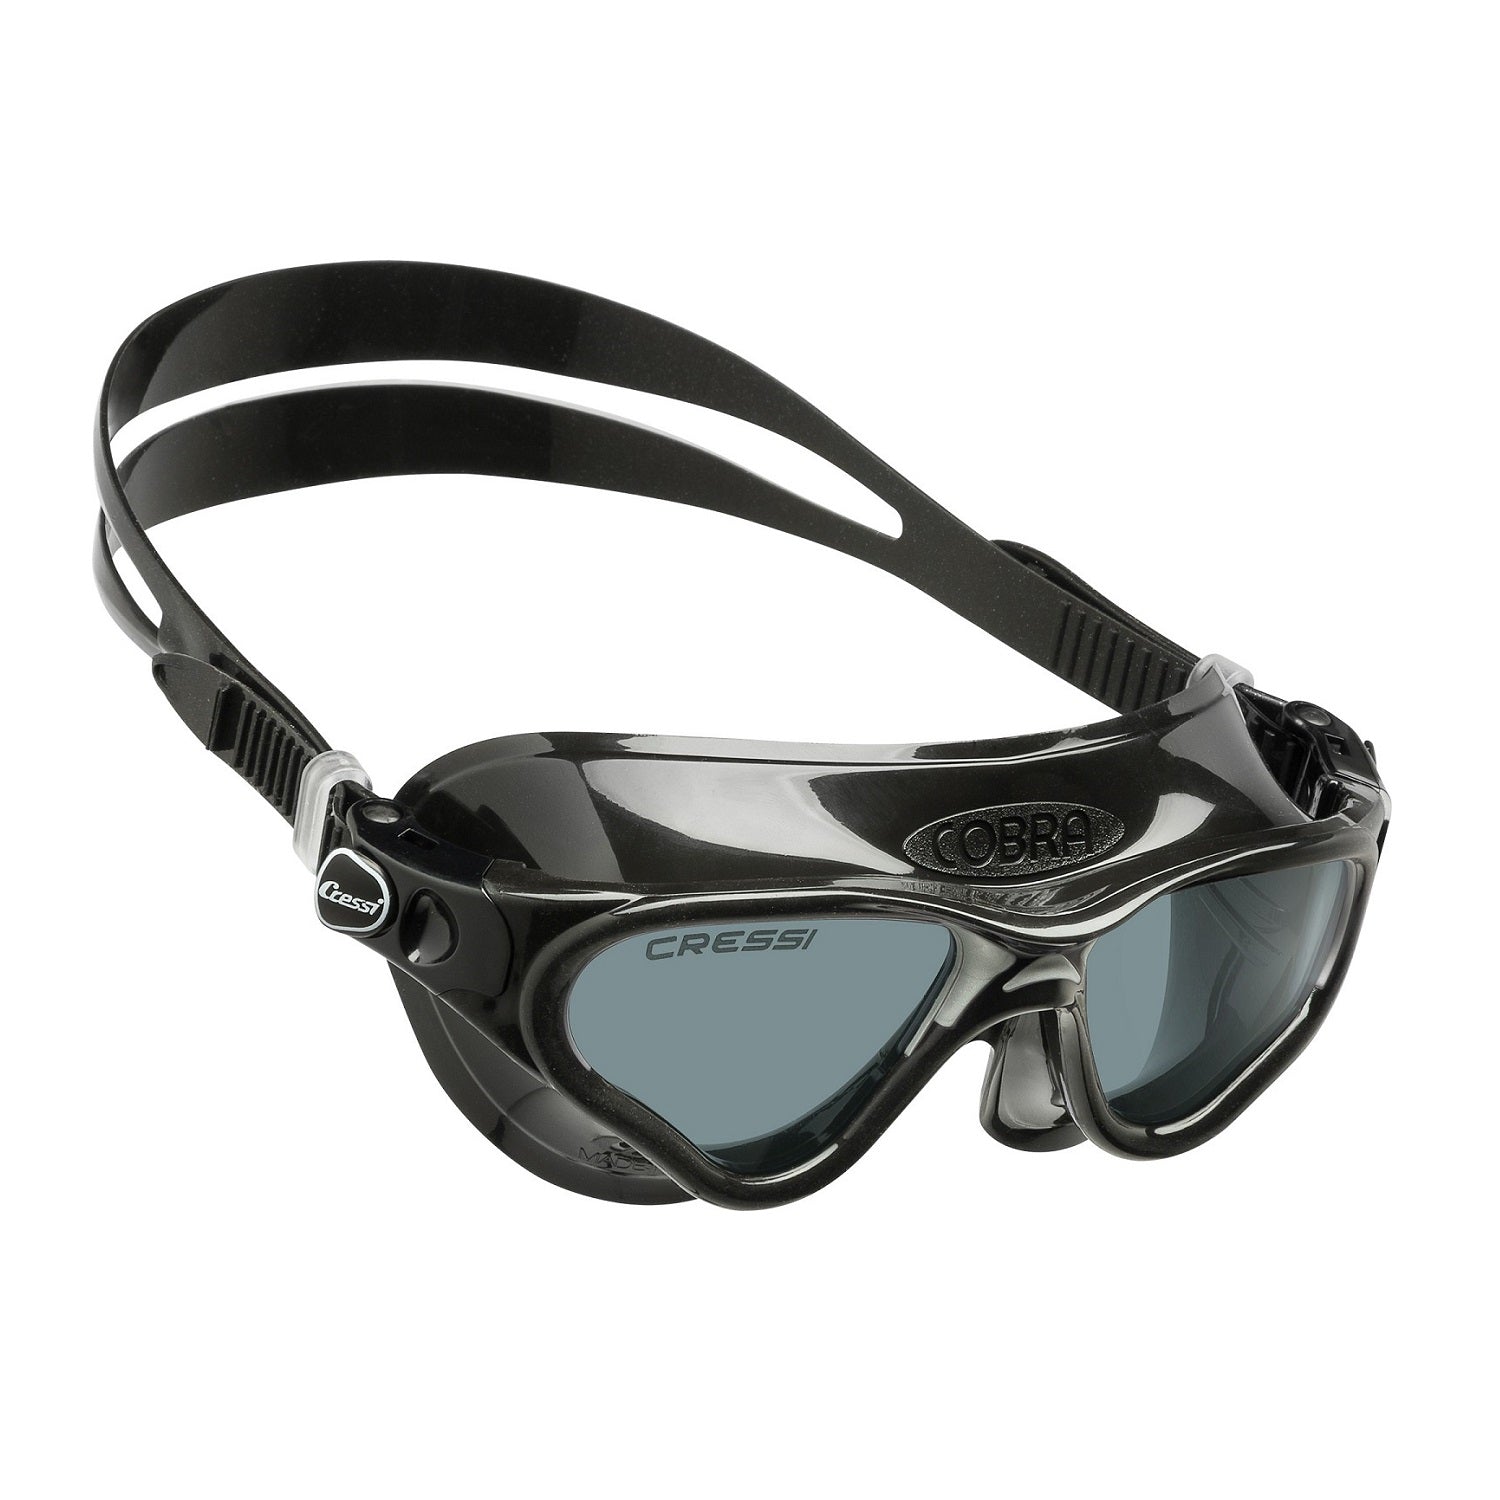 Cobra Swim Goggles